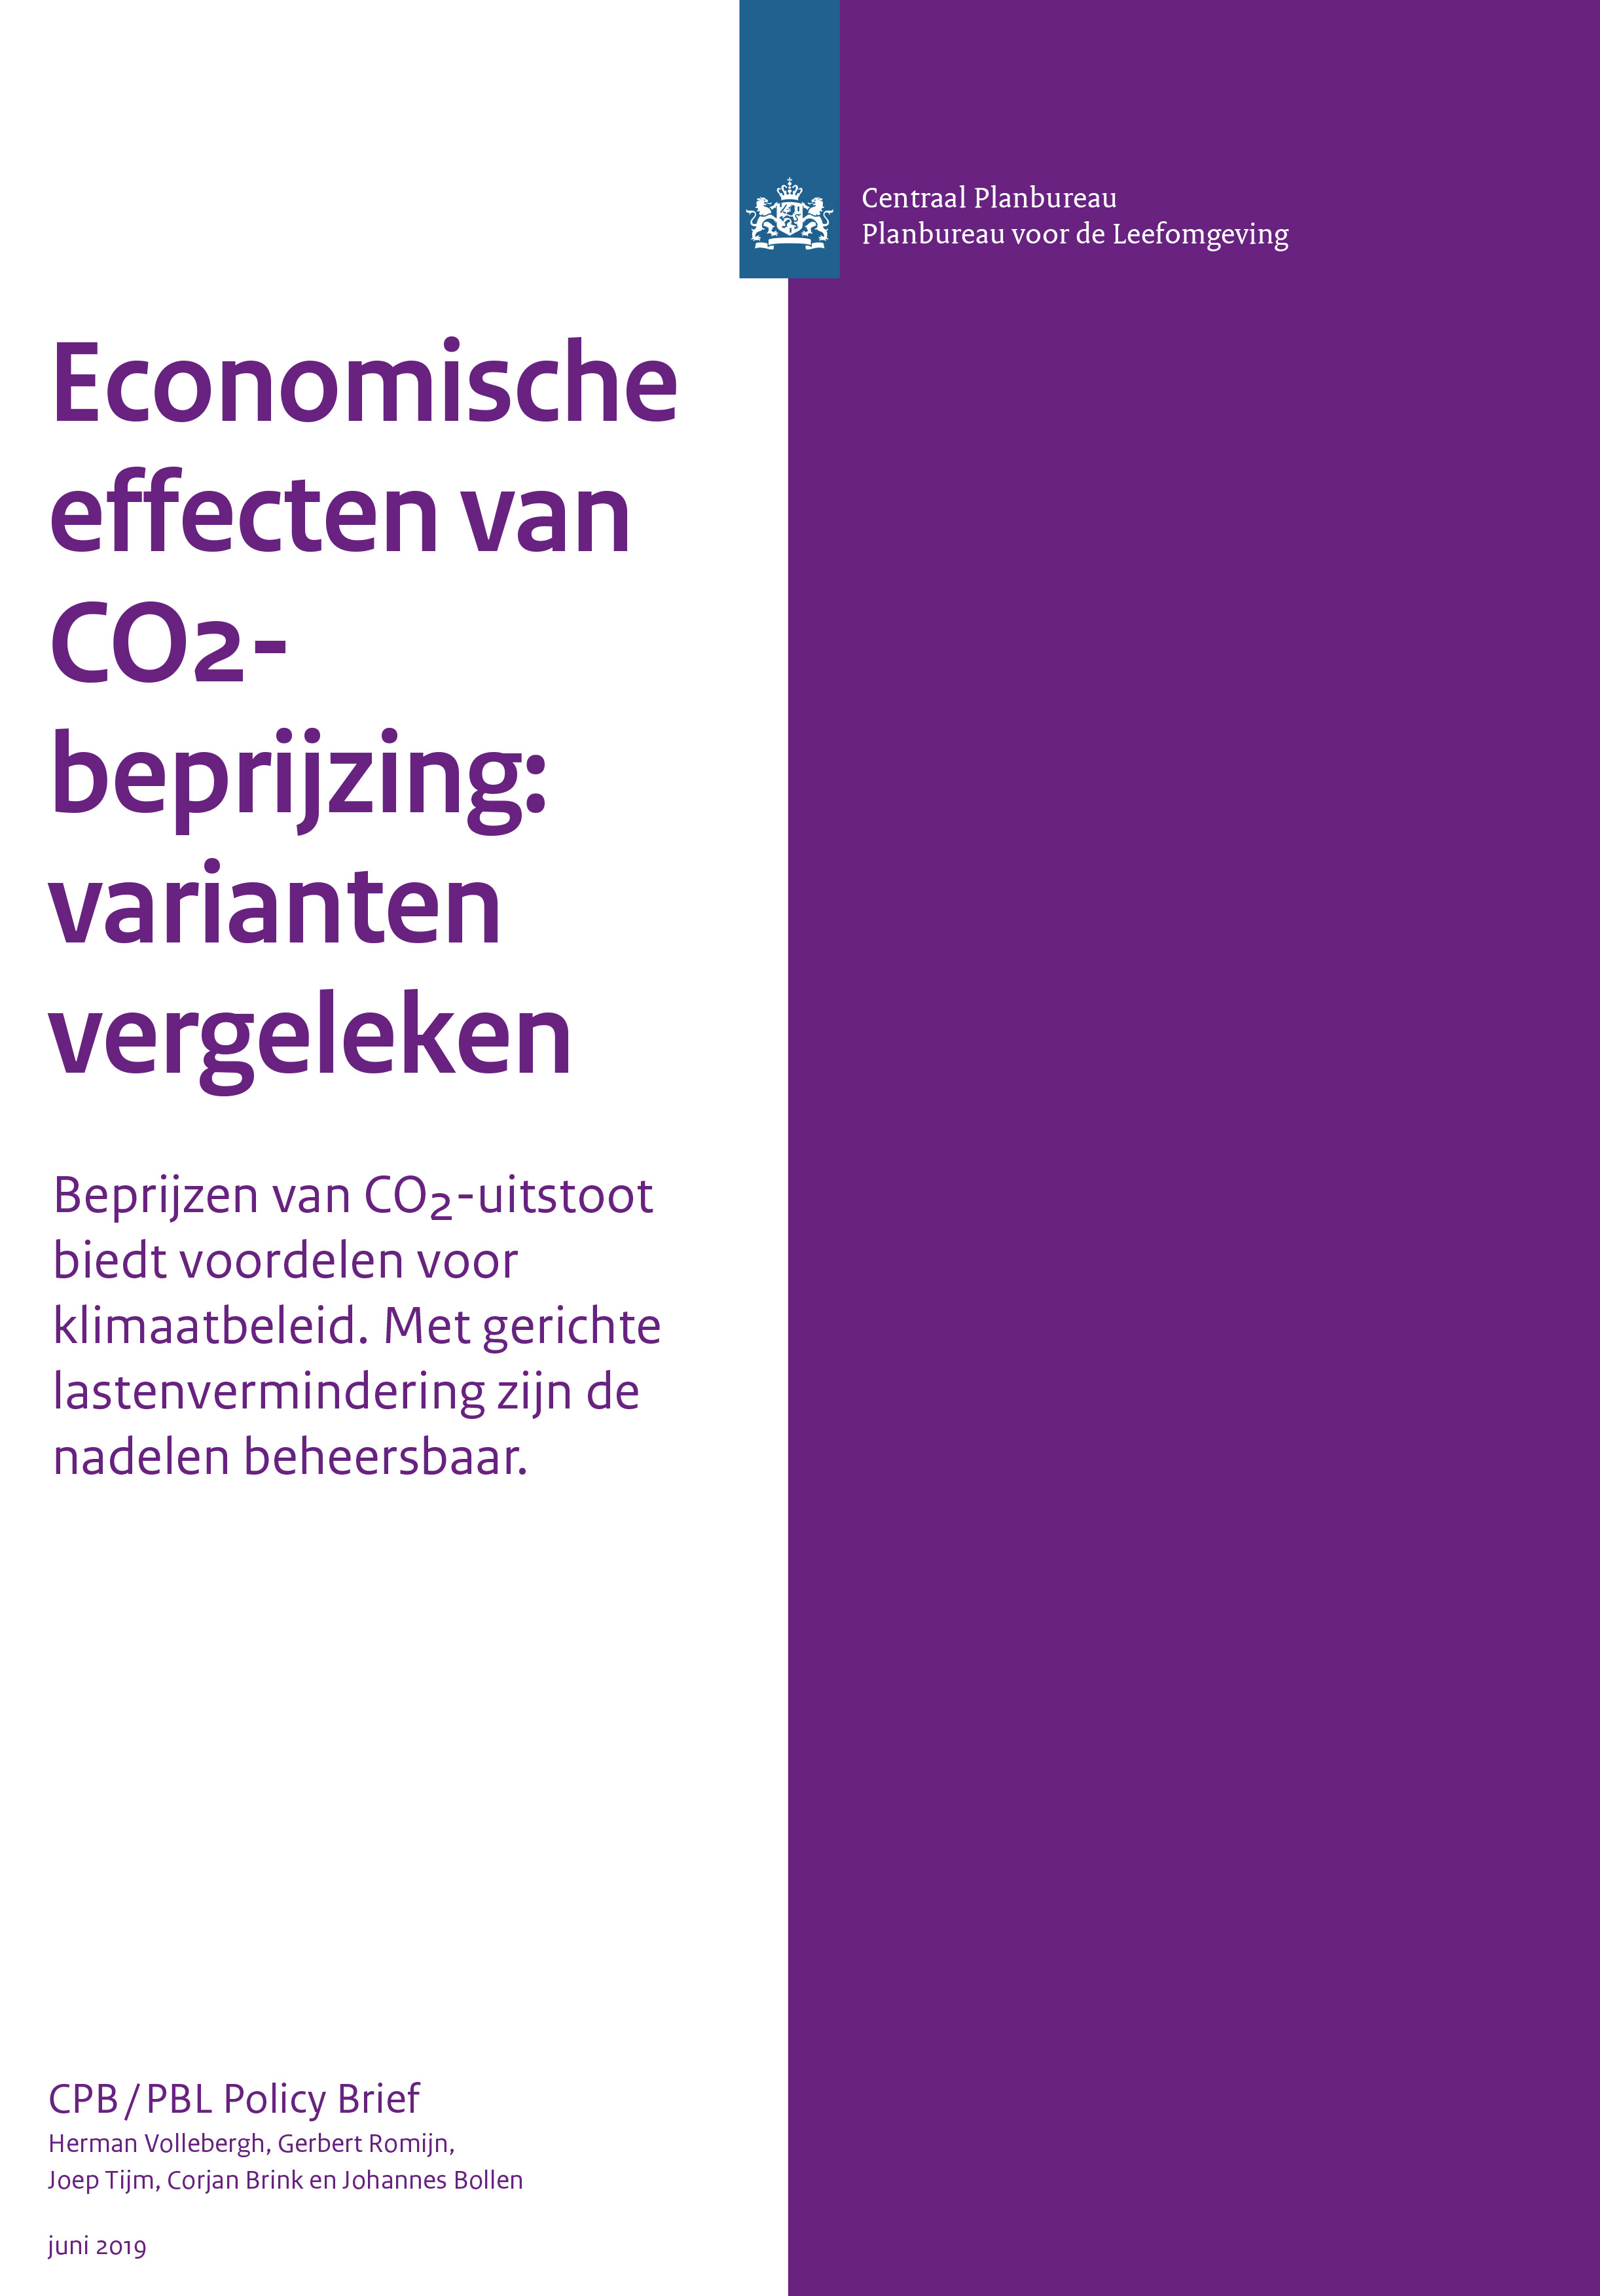 Economische effecten van CO2-beprijzing: varianten vergeleken